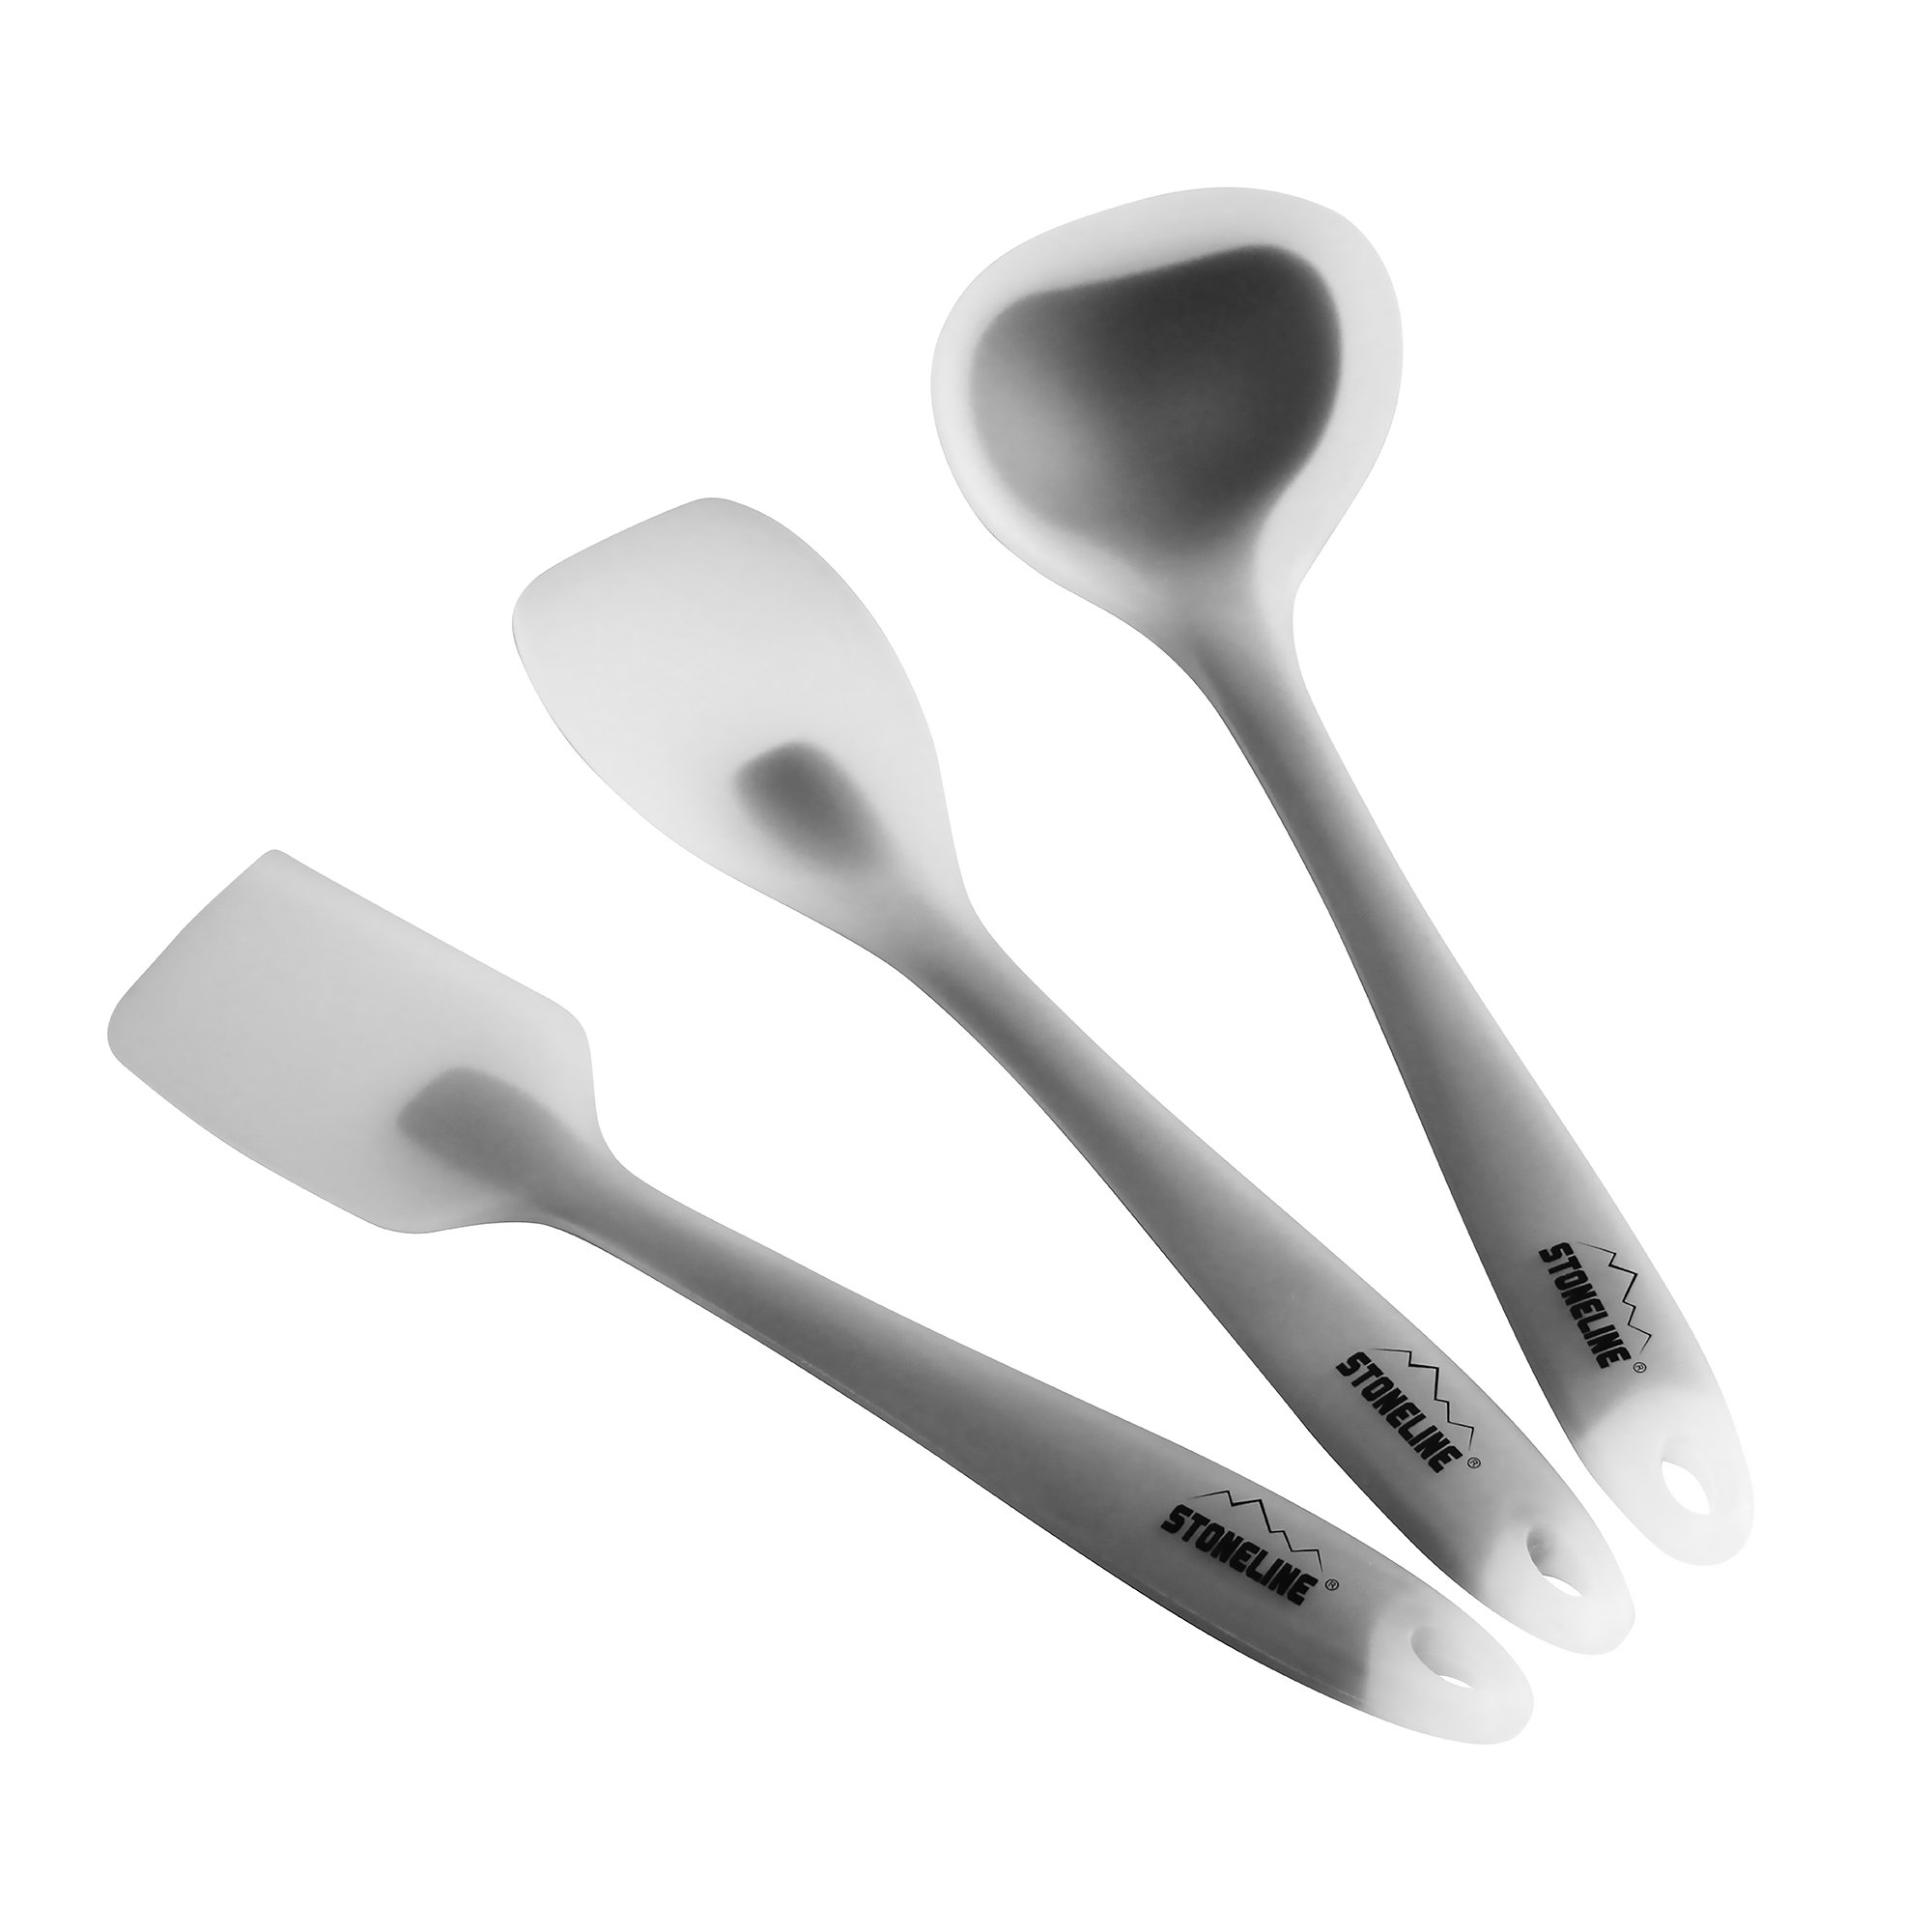 STONELINE® Juego de utensilios de cocina, 3 piezas. 1 rasqueta, 1 cuchara de cocina y 1 cucharón sopero